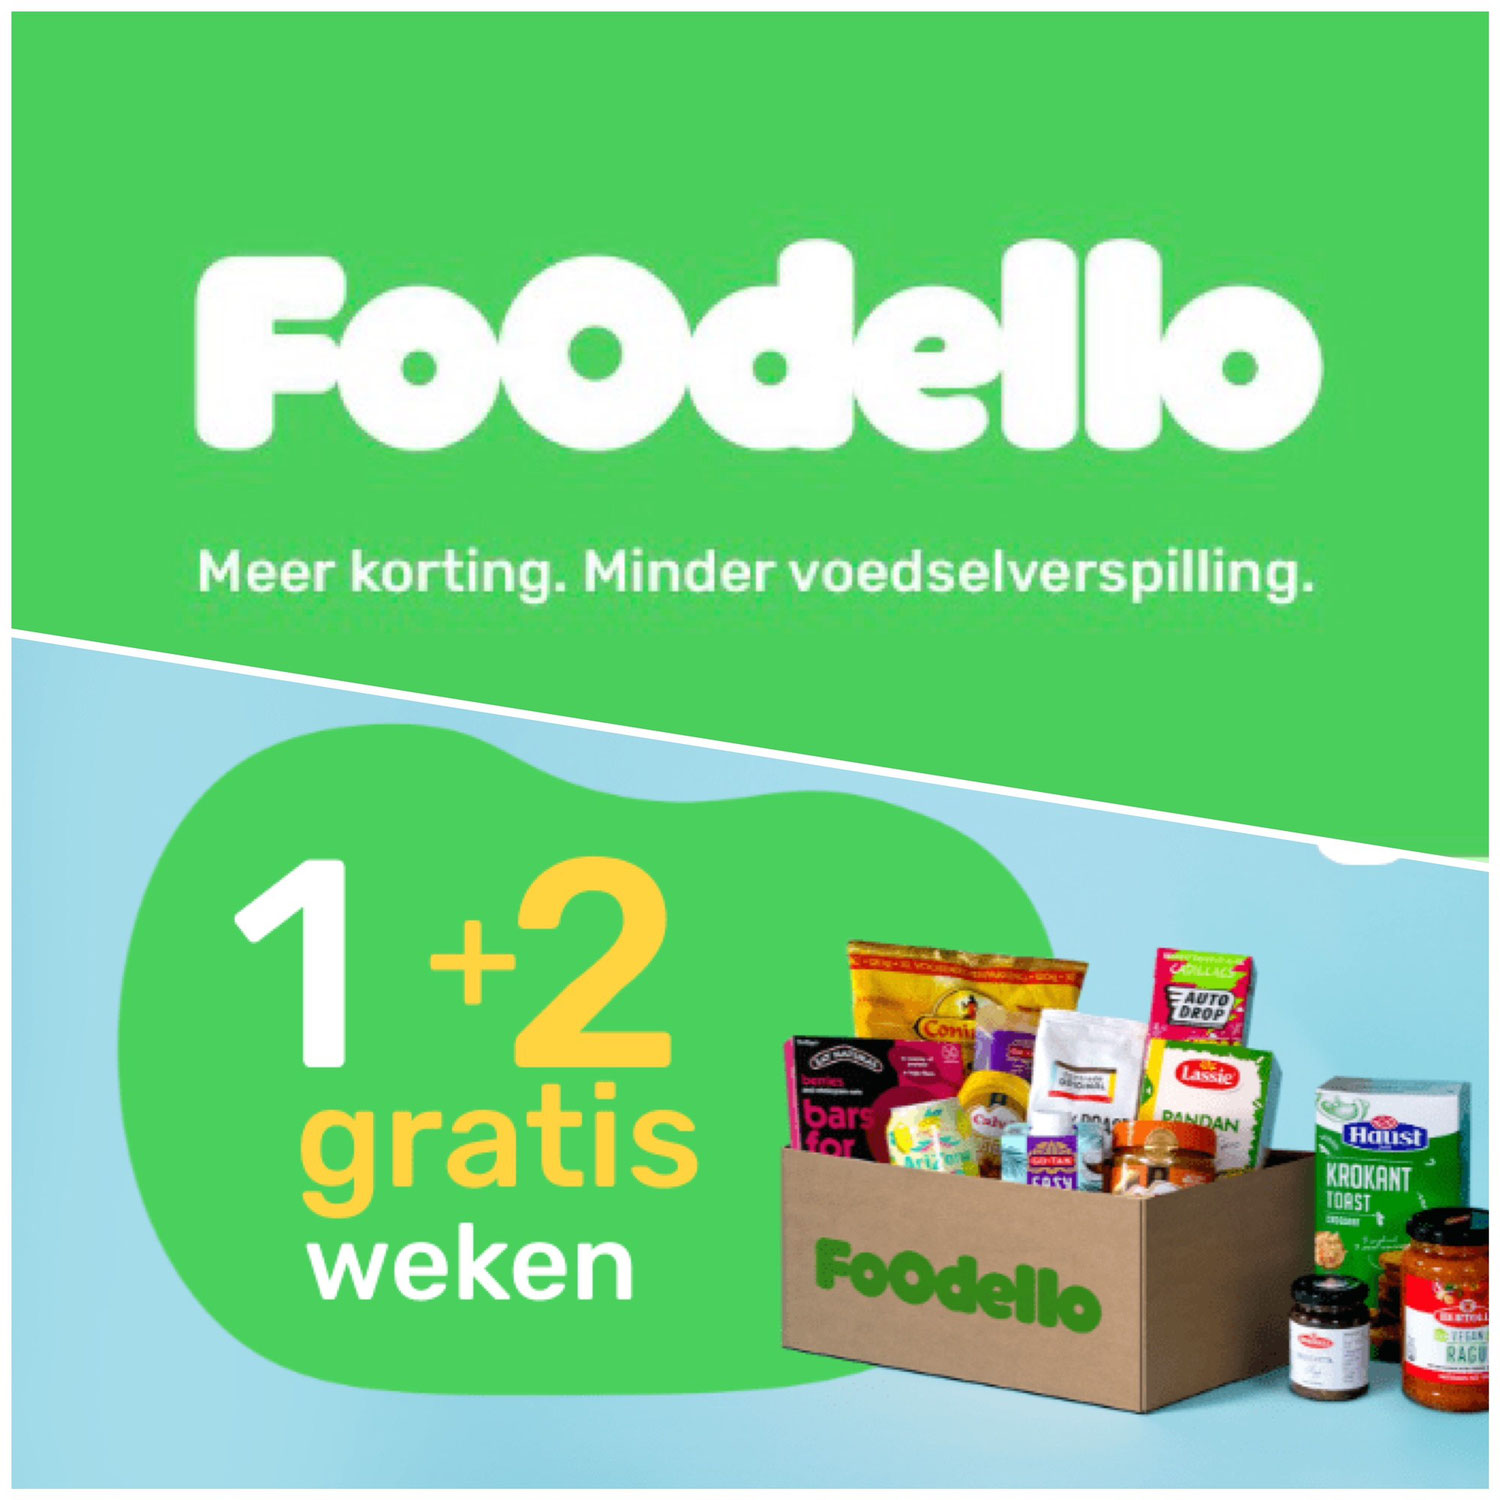 Met Foodello voedselverspilling tegengaan én besparen